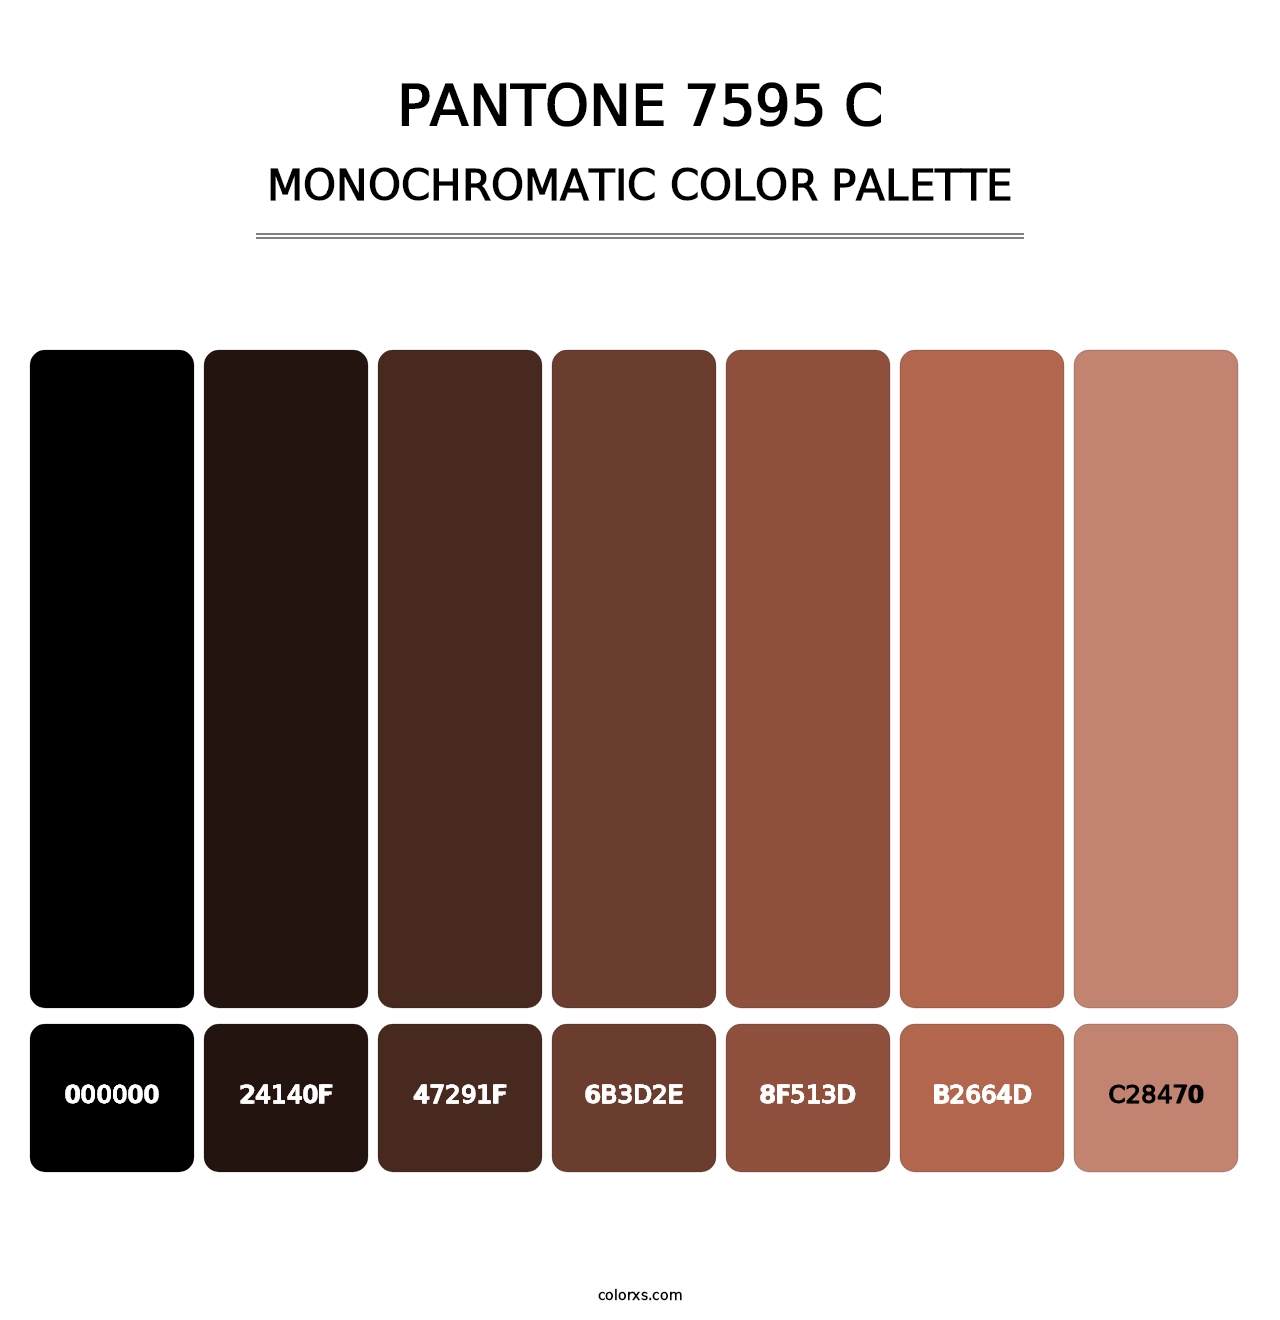 PANTONE 7595 C - Monochromatic Color Palette